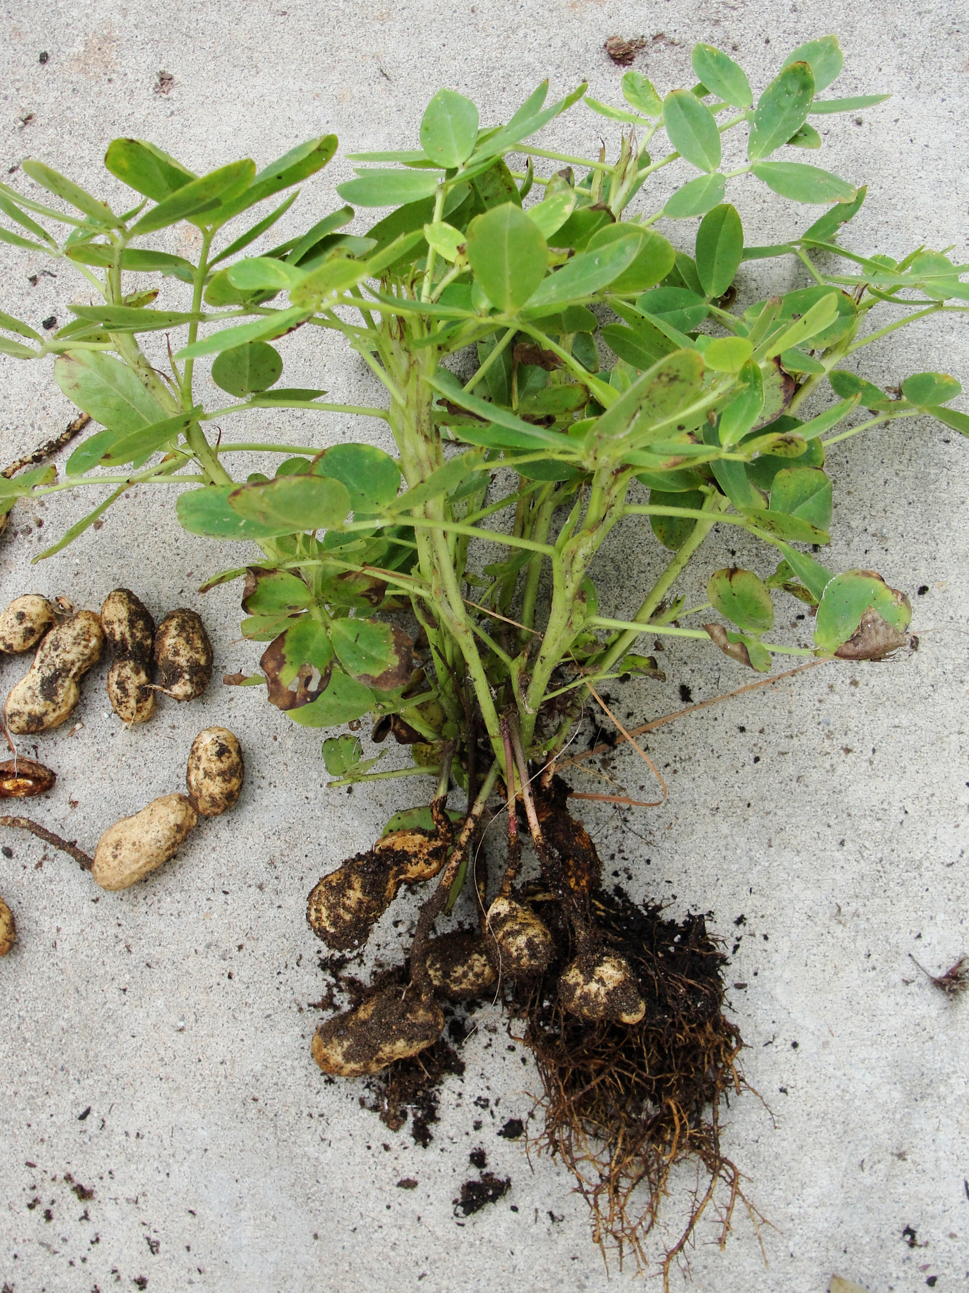 Как растет арахис в природе фото где растет